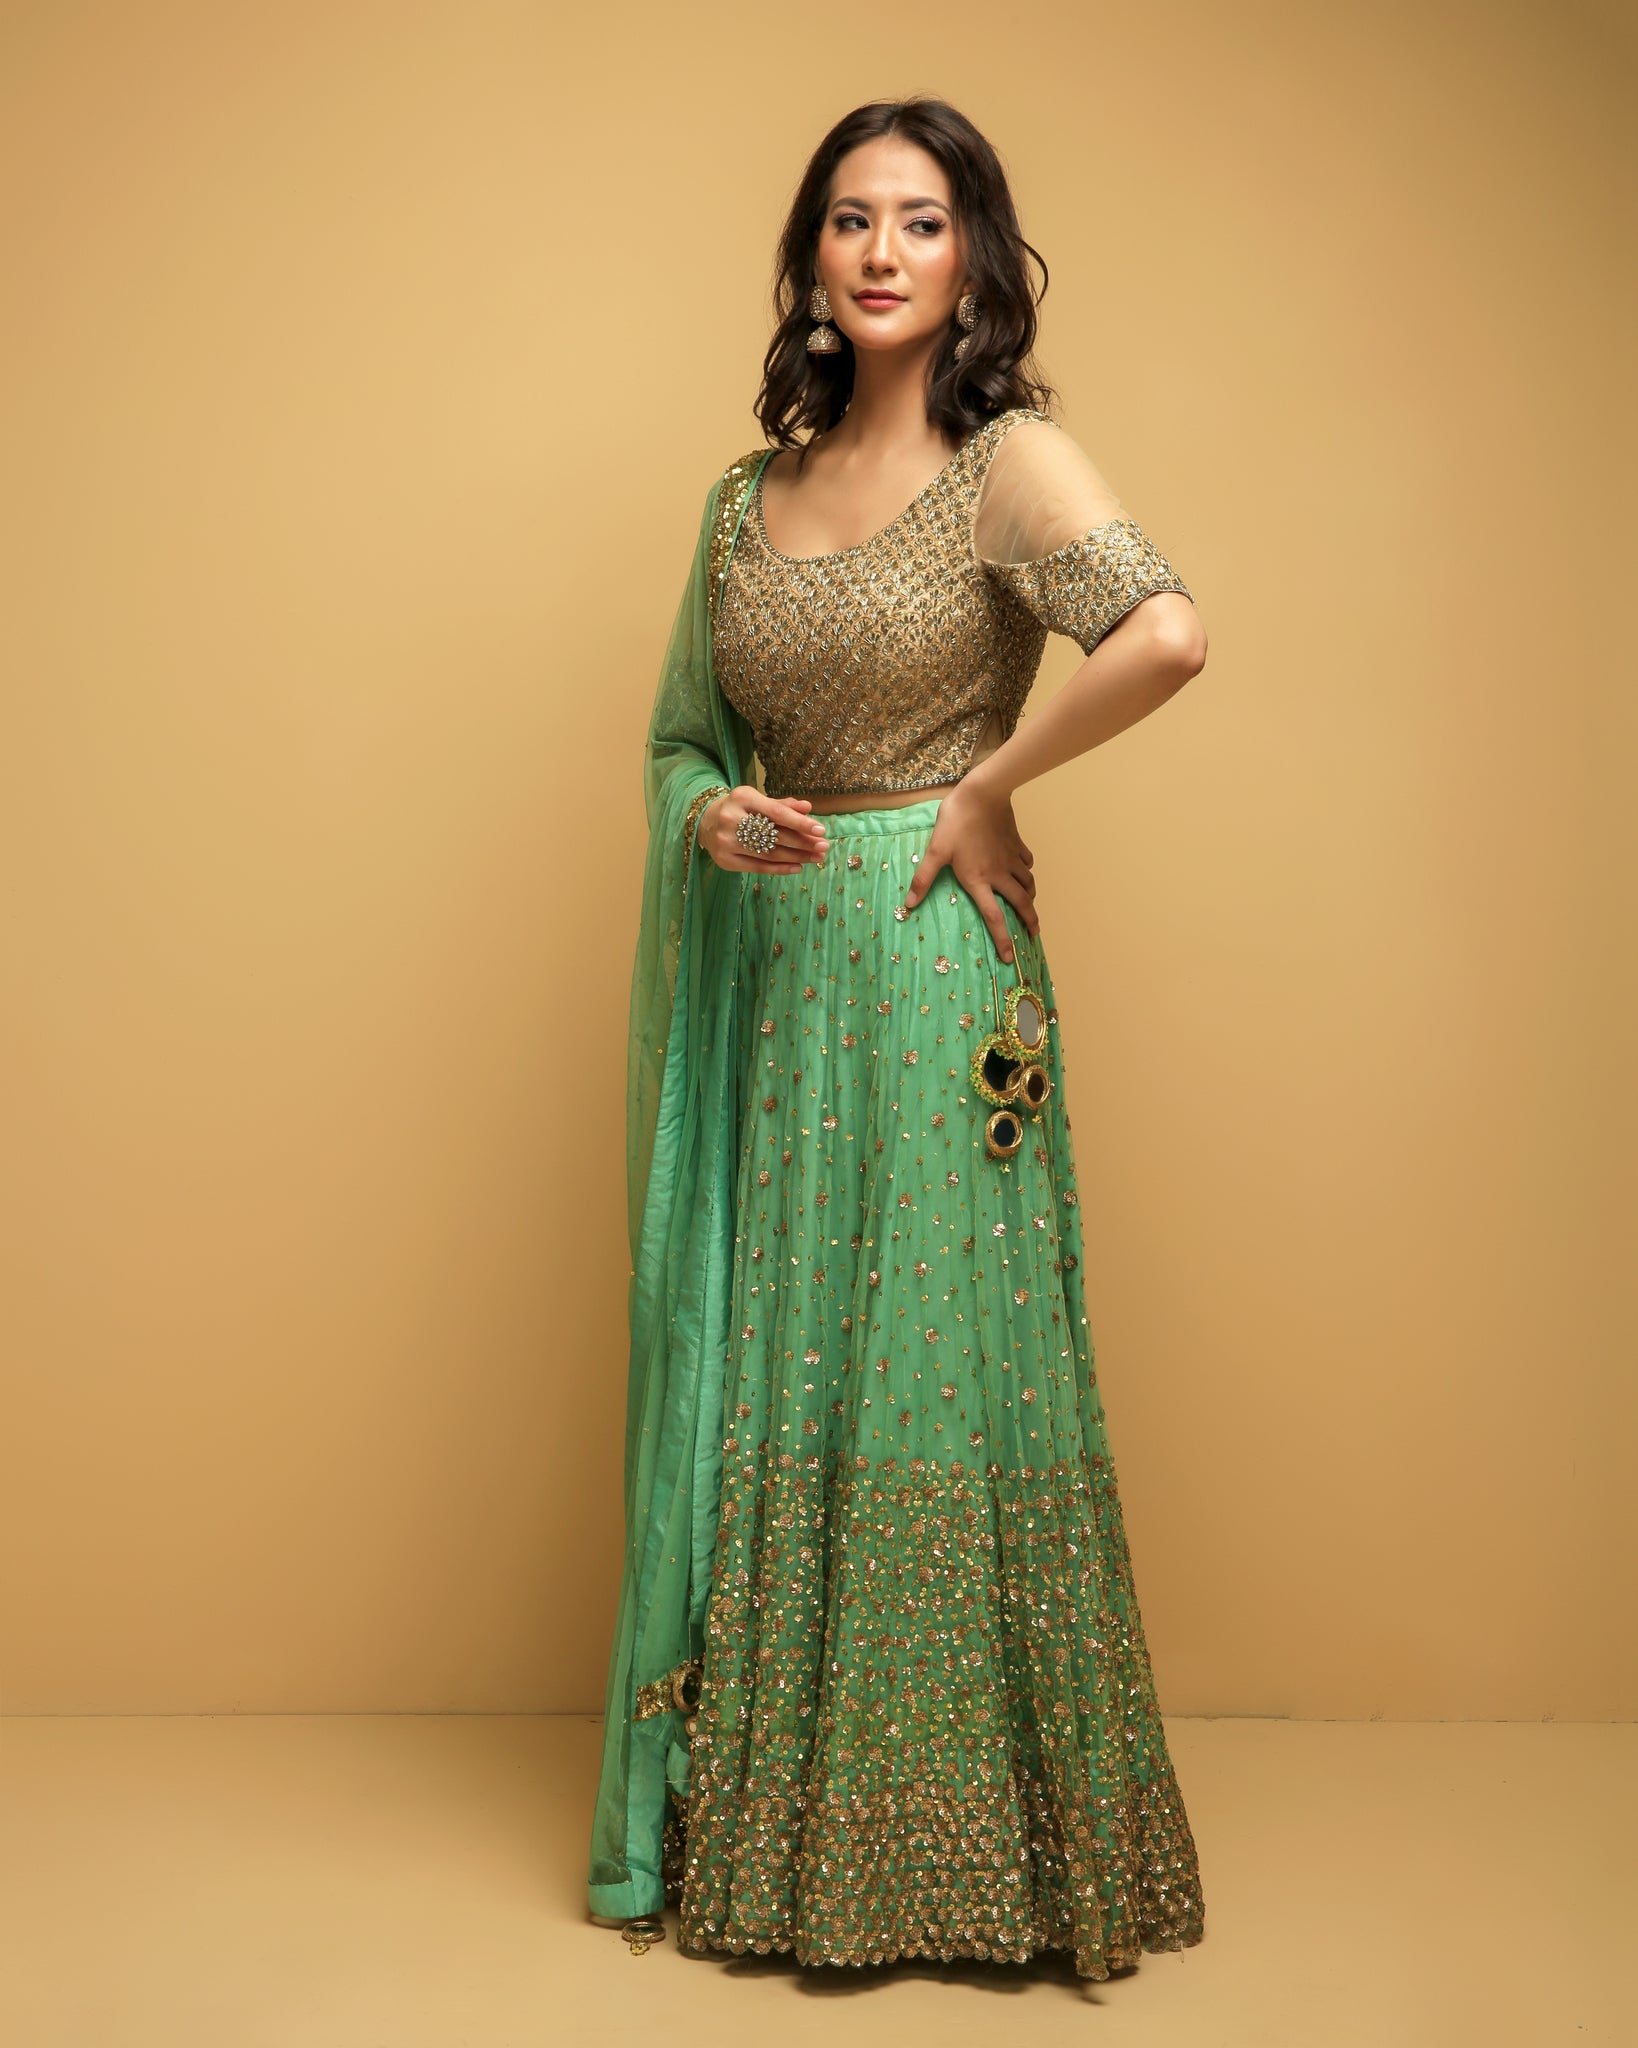 Golden Delights: Diwali Net Lehenga Choli Trends for 2023 |Zeel Clothing